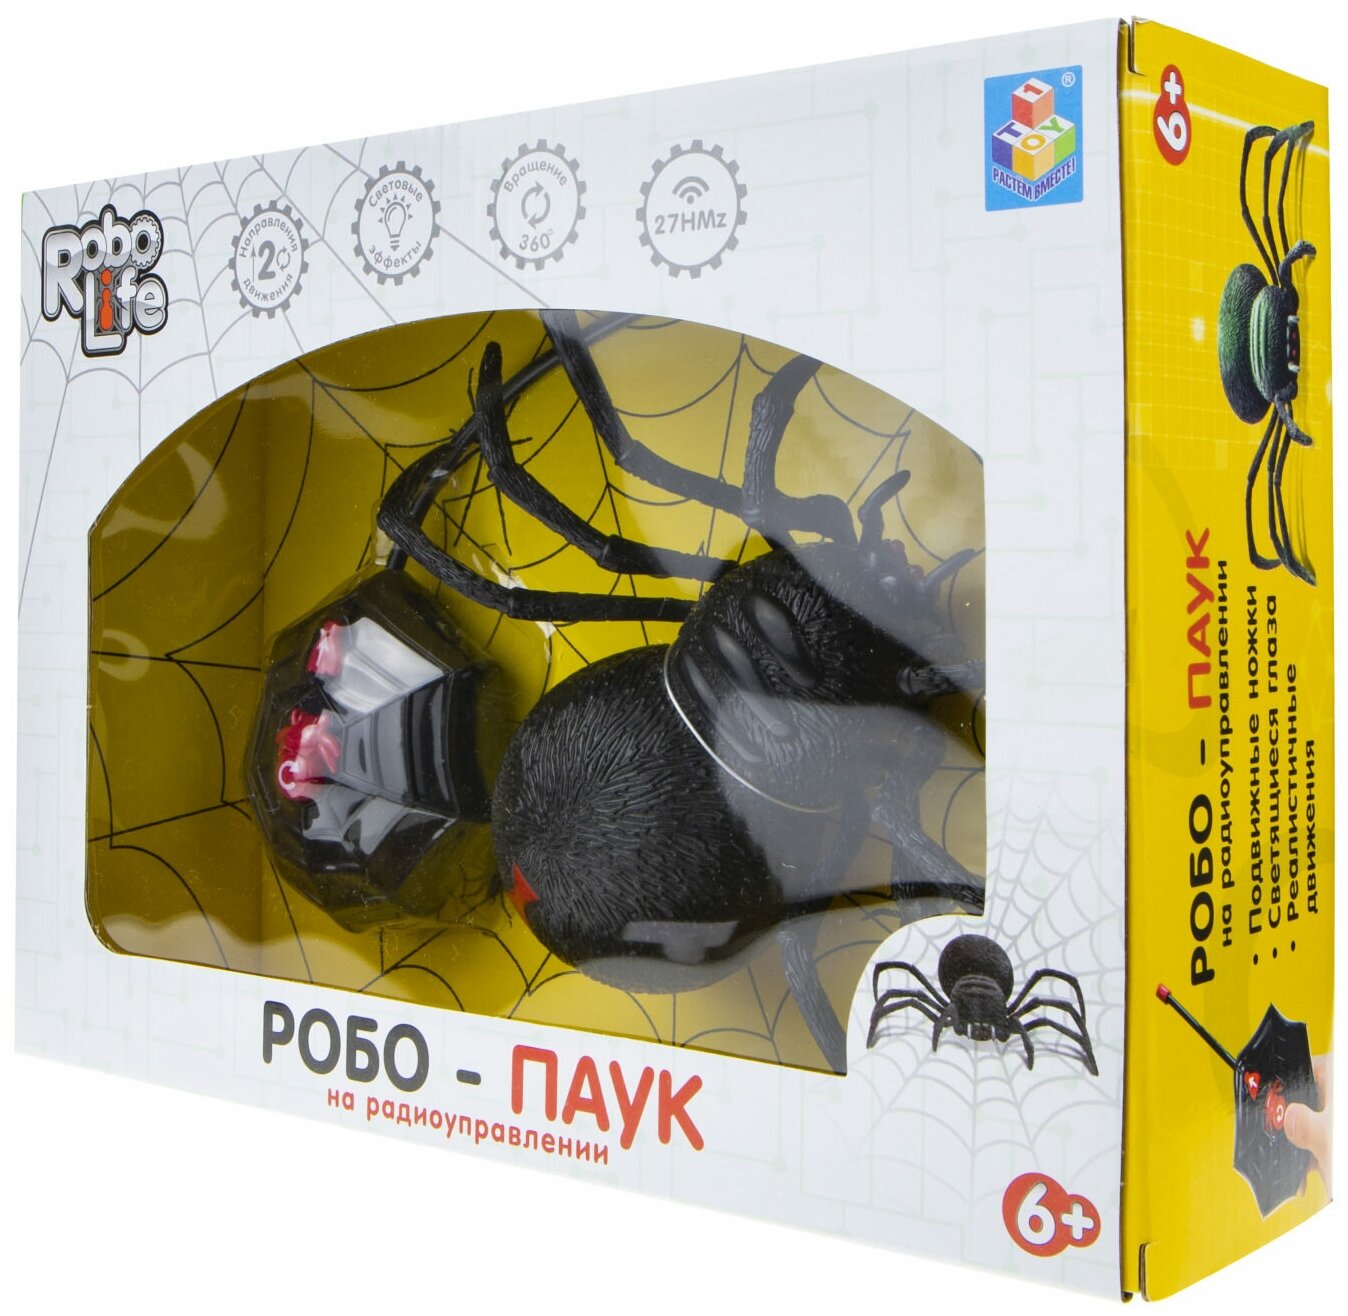 1toy T19034 RoboLife игрушка "Робо-паук" (свет, звук, движение) на р/у - фото №6